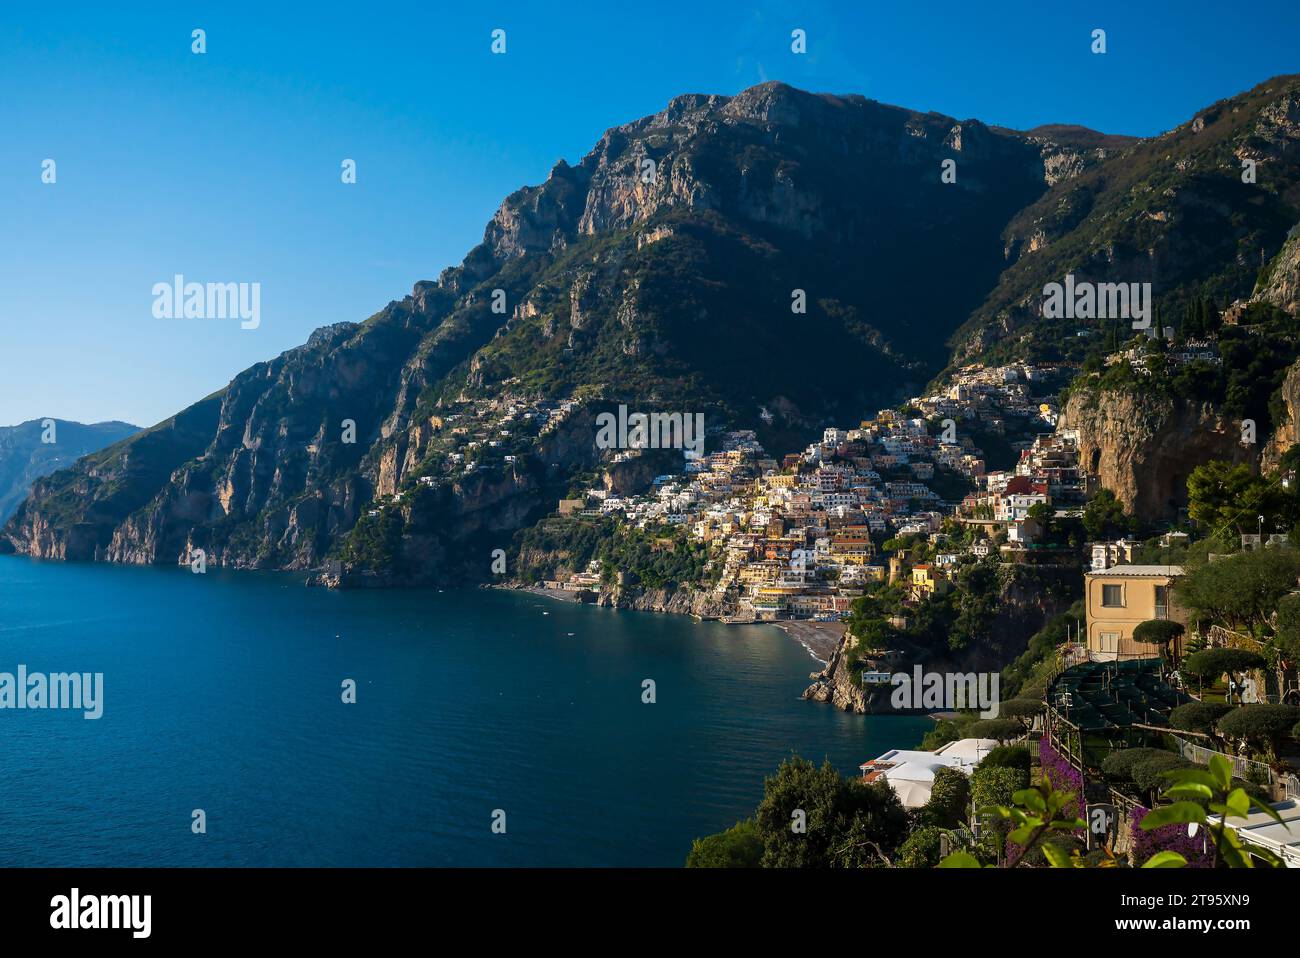 Le charme de Positano sur la côte amalfitaine, dans le sud de l'Italie, se déploie dans ce paysage. L'élégance architecturale rencontre des falaises accidentées et des mers azur, créant un Banque D'Images